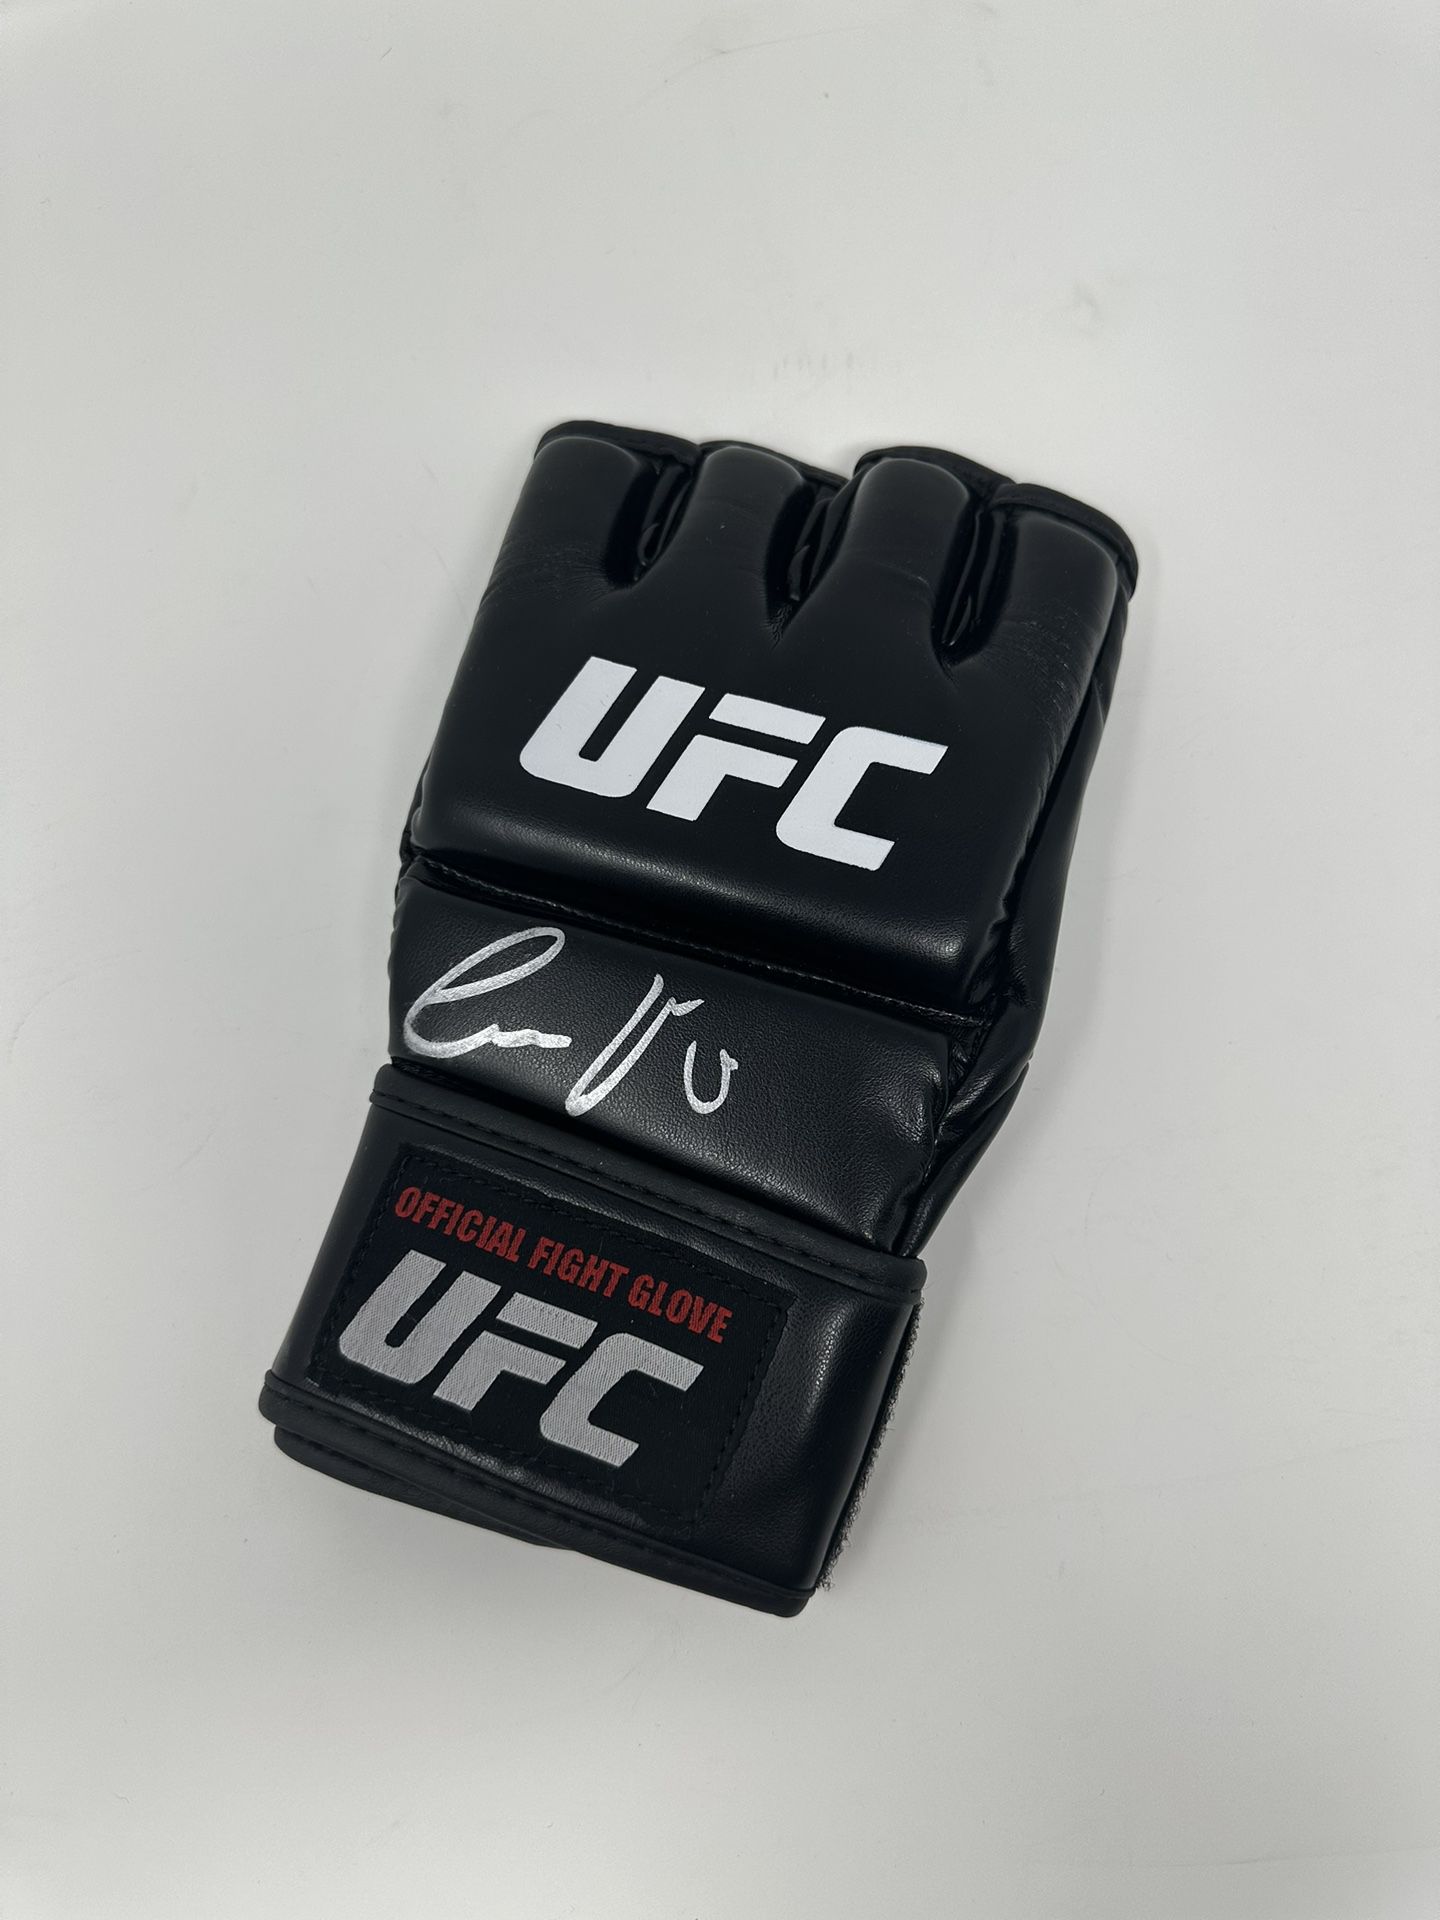 UFC Conor McGregor Autographed MMA Glove 